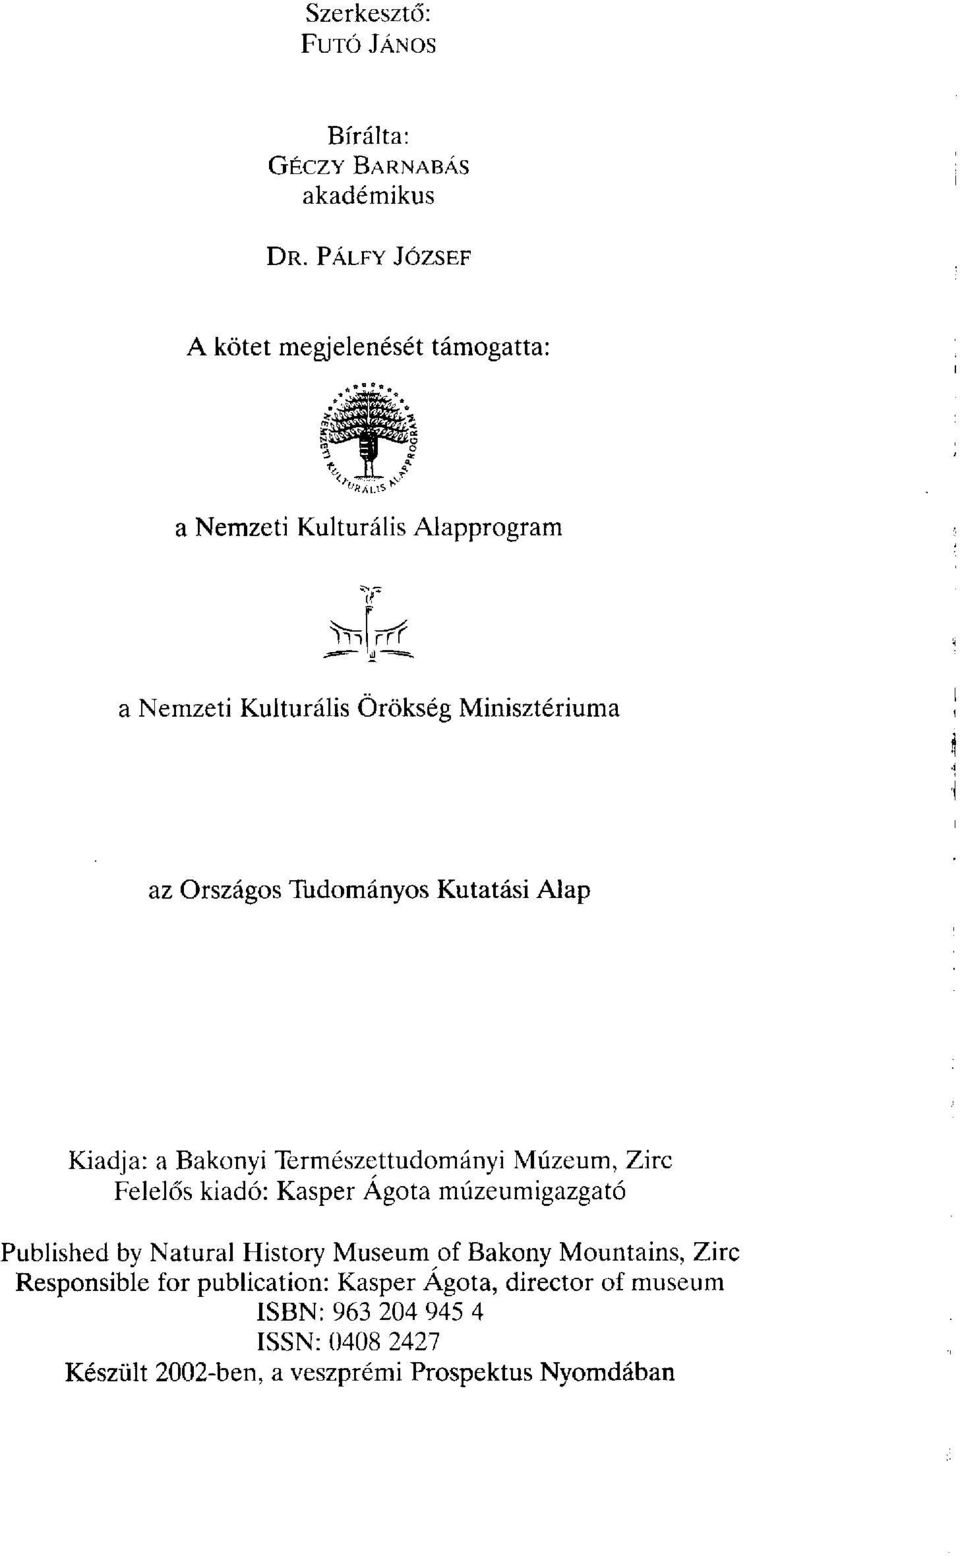 Országos Tudományos Kutatási Alap Kiadja: a Bakonyi Természettudományi Múzeum, Zirc Felelős kiadó: Kasper Ágota múzeumigazgató